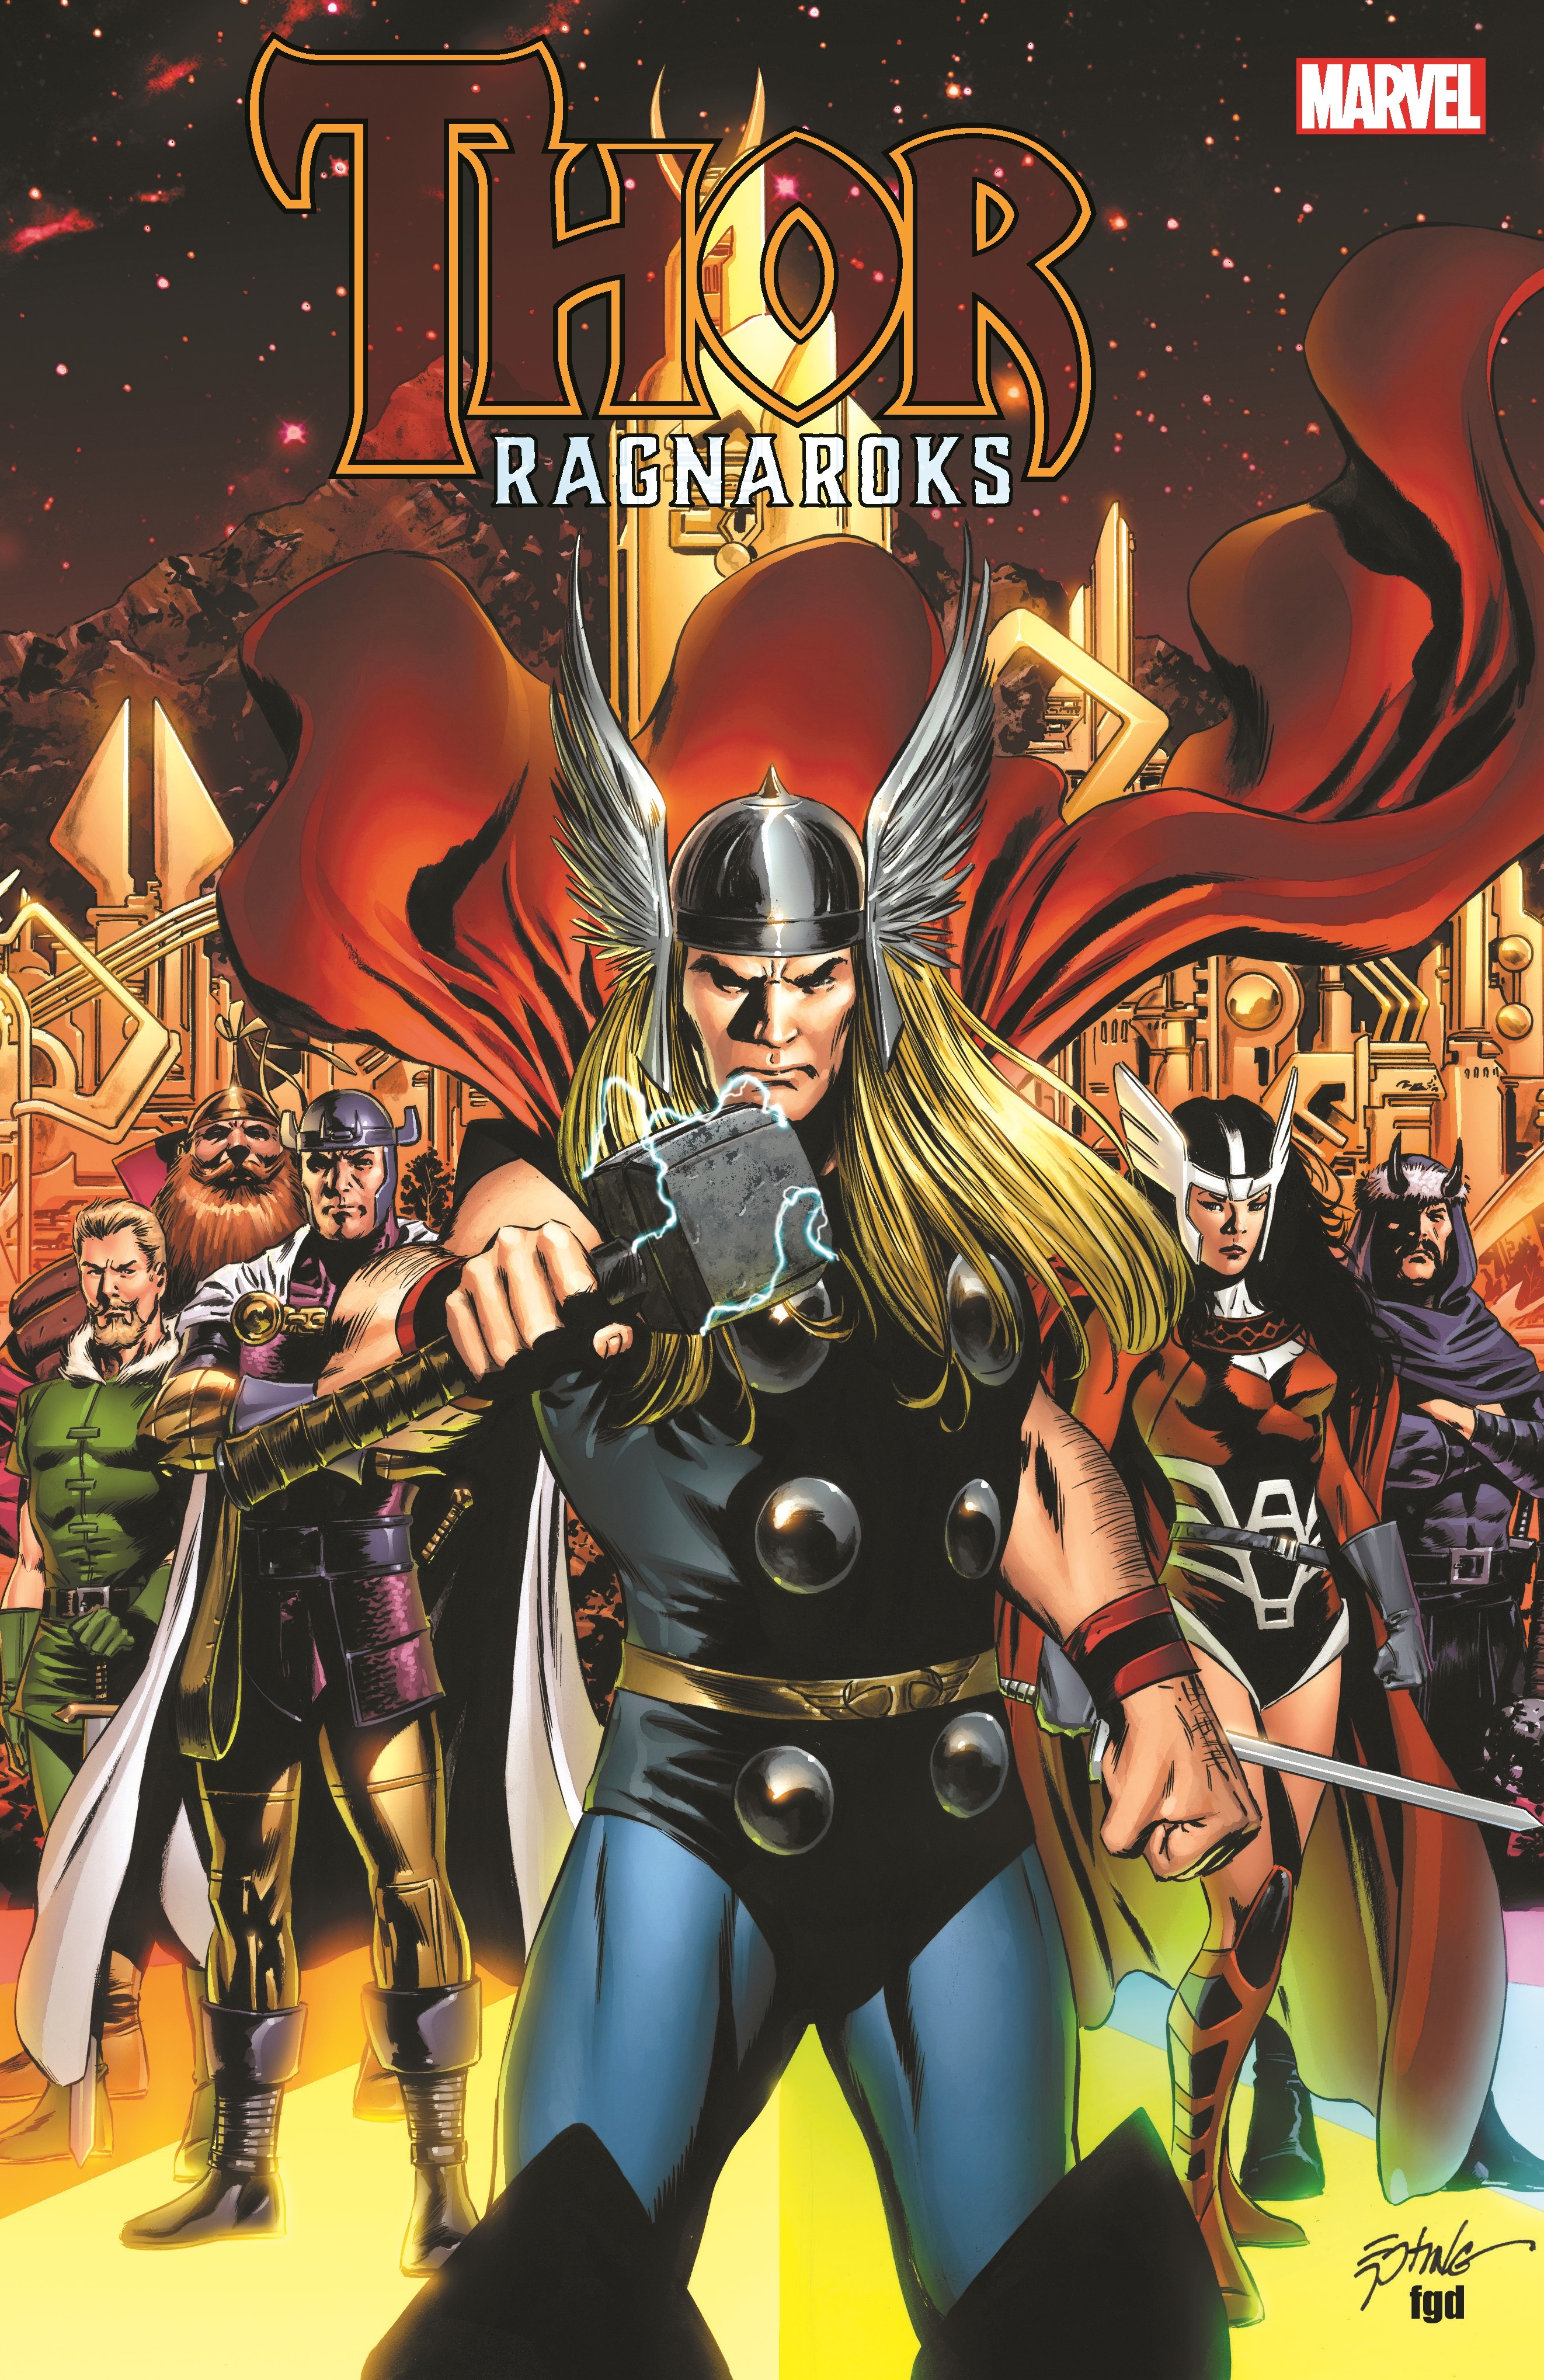 Thor: Ragnaroks (Trade Paperback)